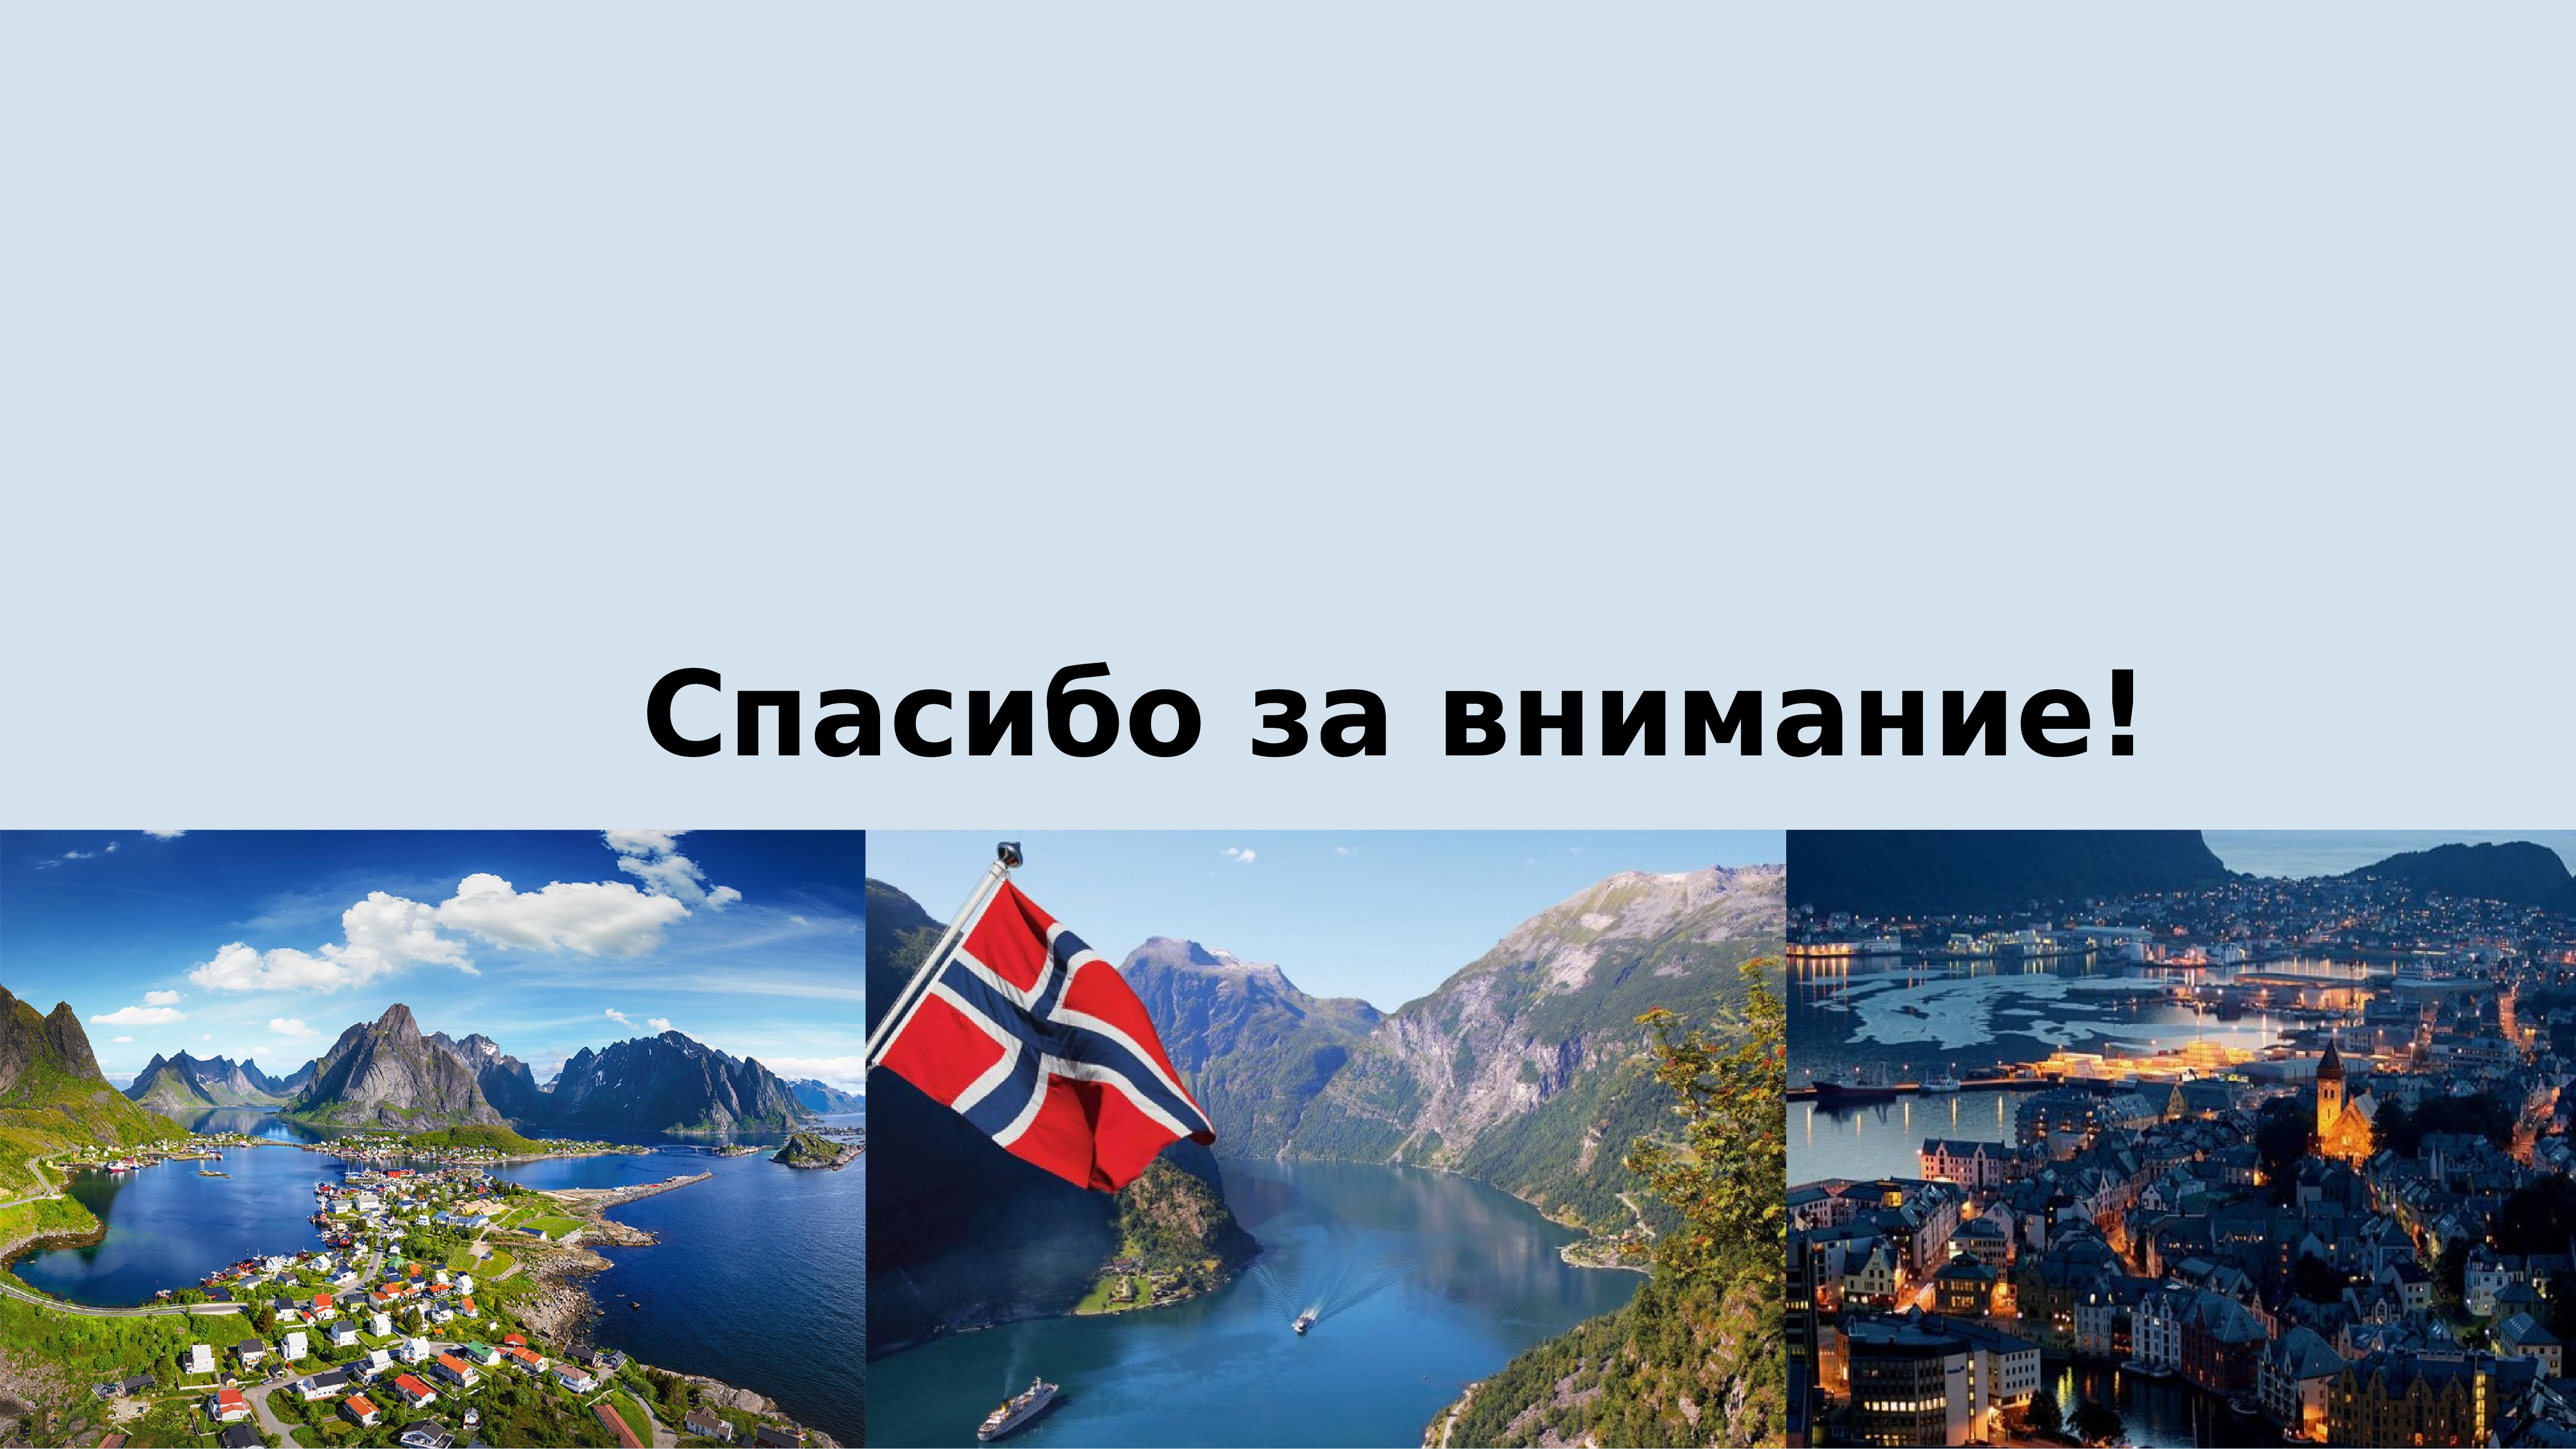 о достопримечательностях норвегии описание